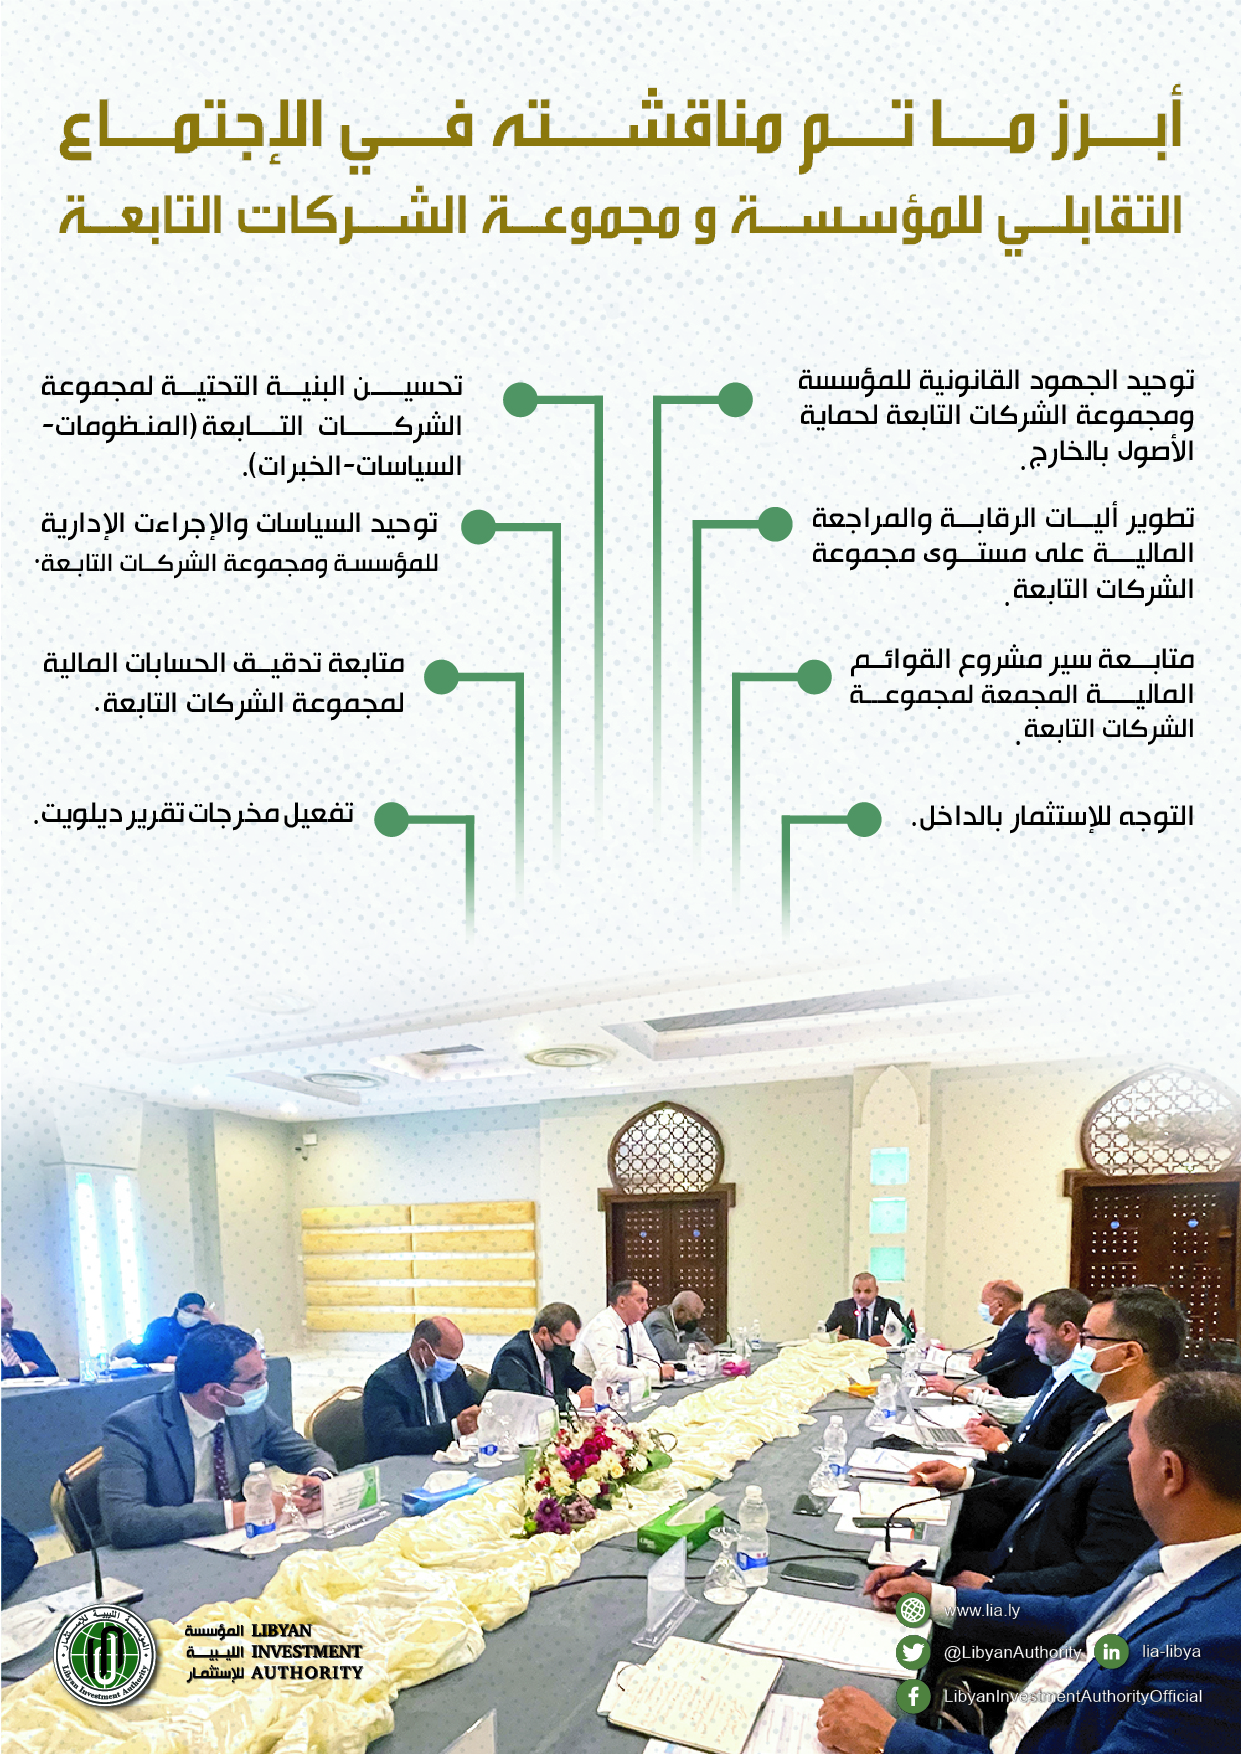 الإجتماع التقابلي للمؤسسة الليبية للاستثمار و مجموعة الشركات التابعة.